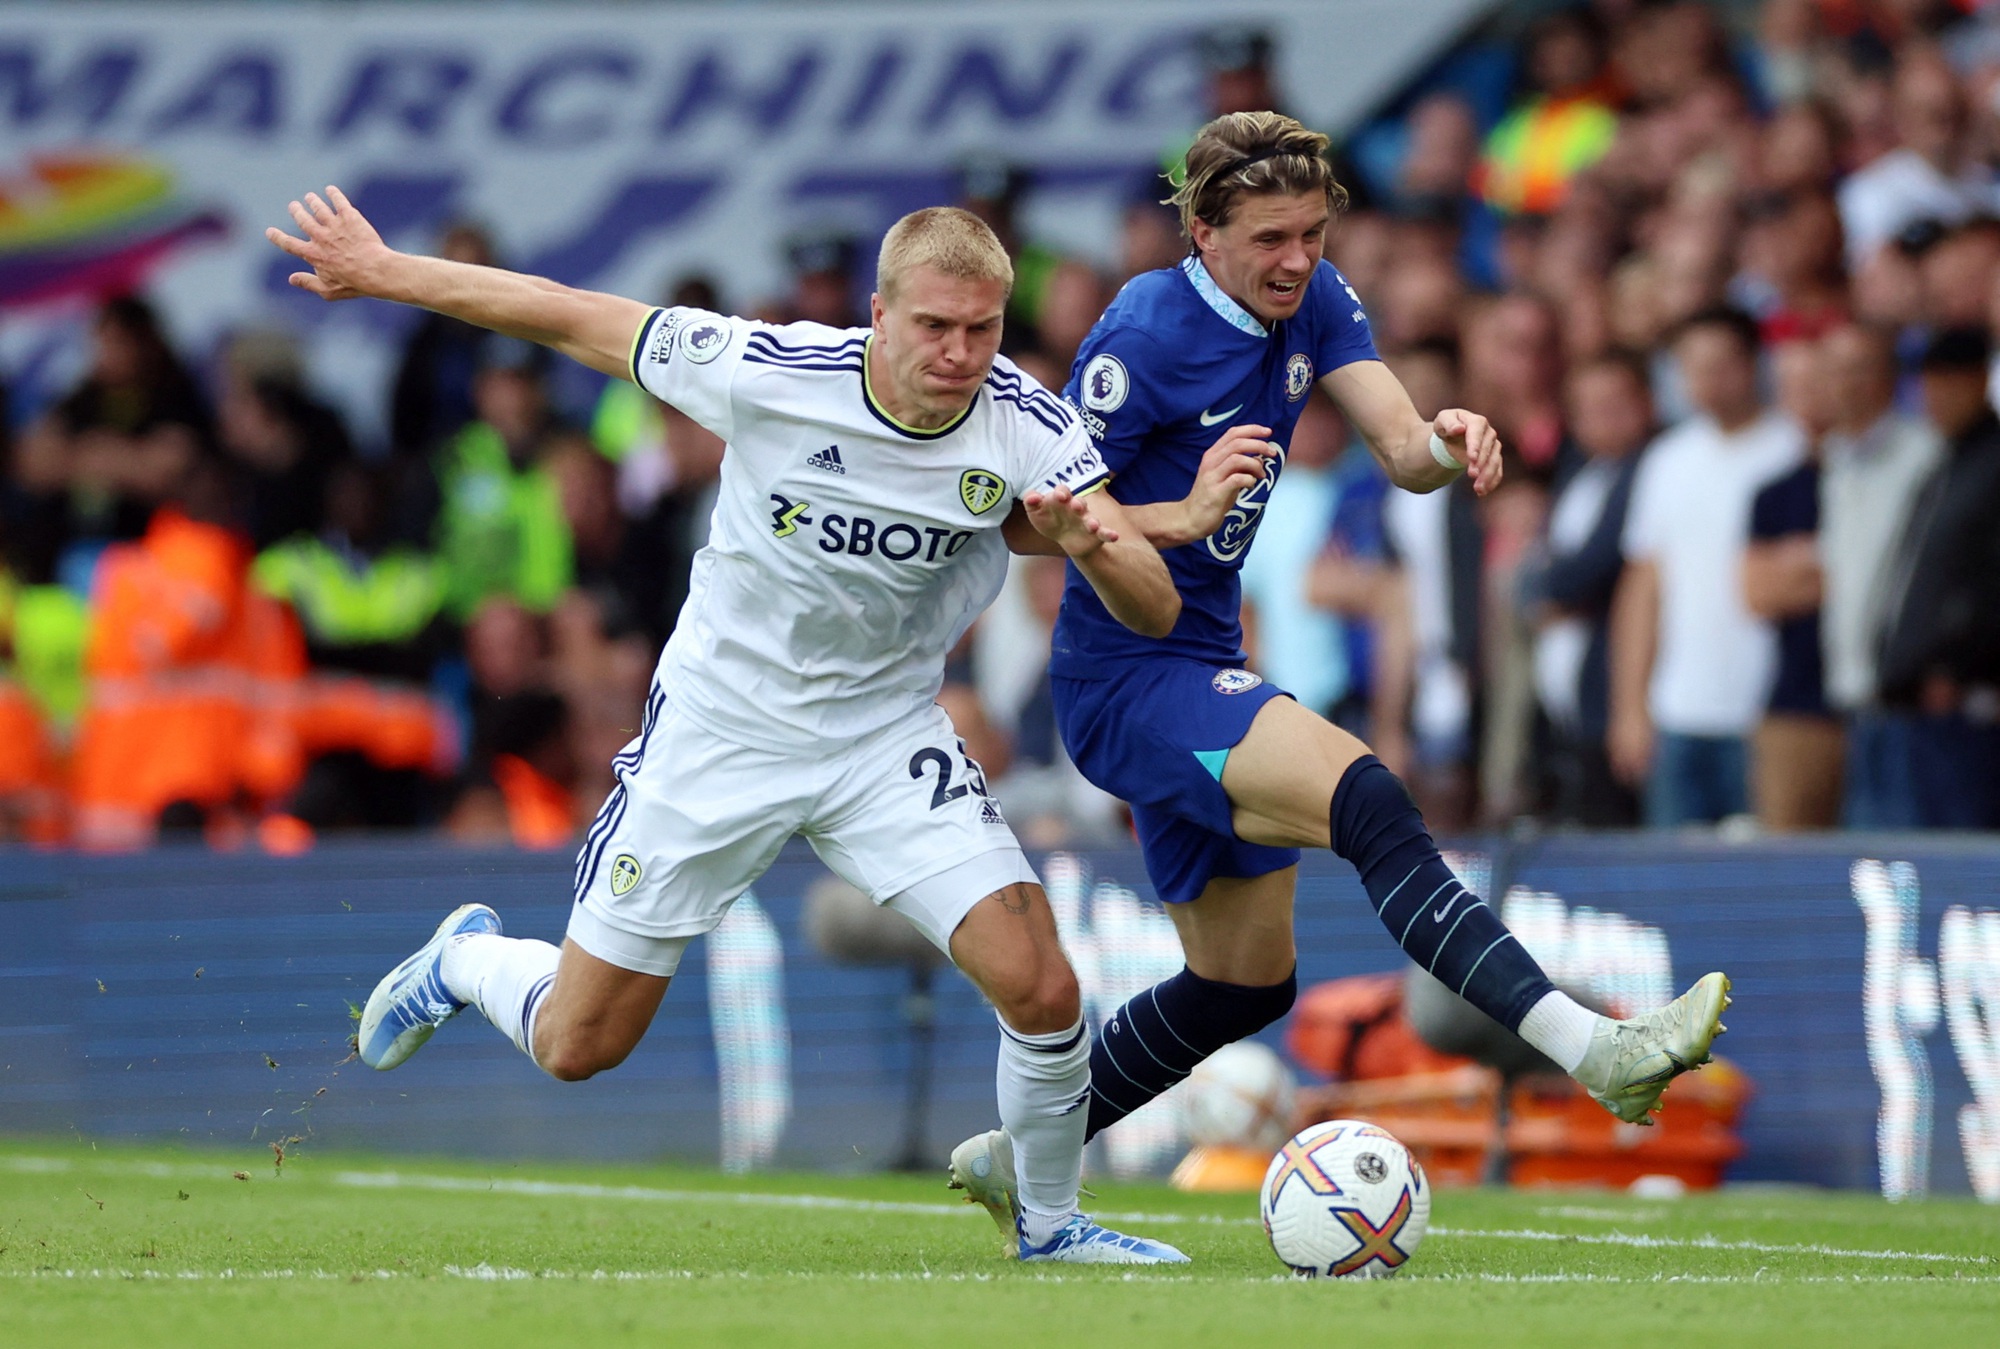 Thua sốc 0-3 Leeds United, Chelsea trượt dài bảng xếp hạng - Ảnh 5.